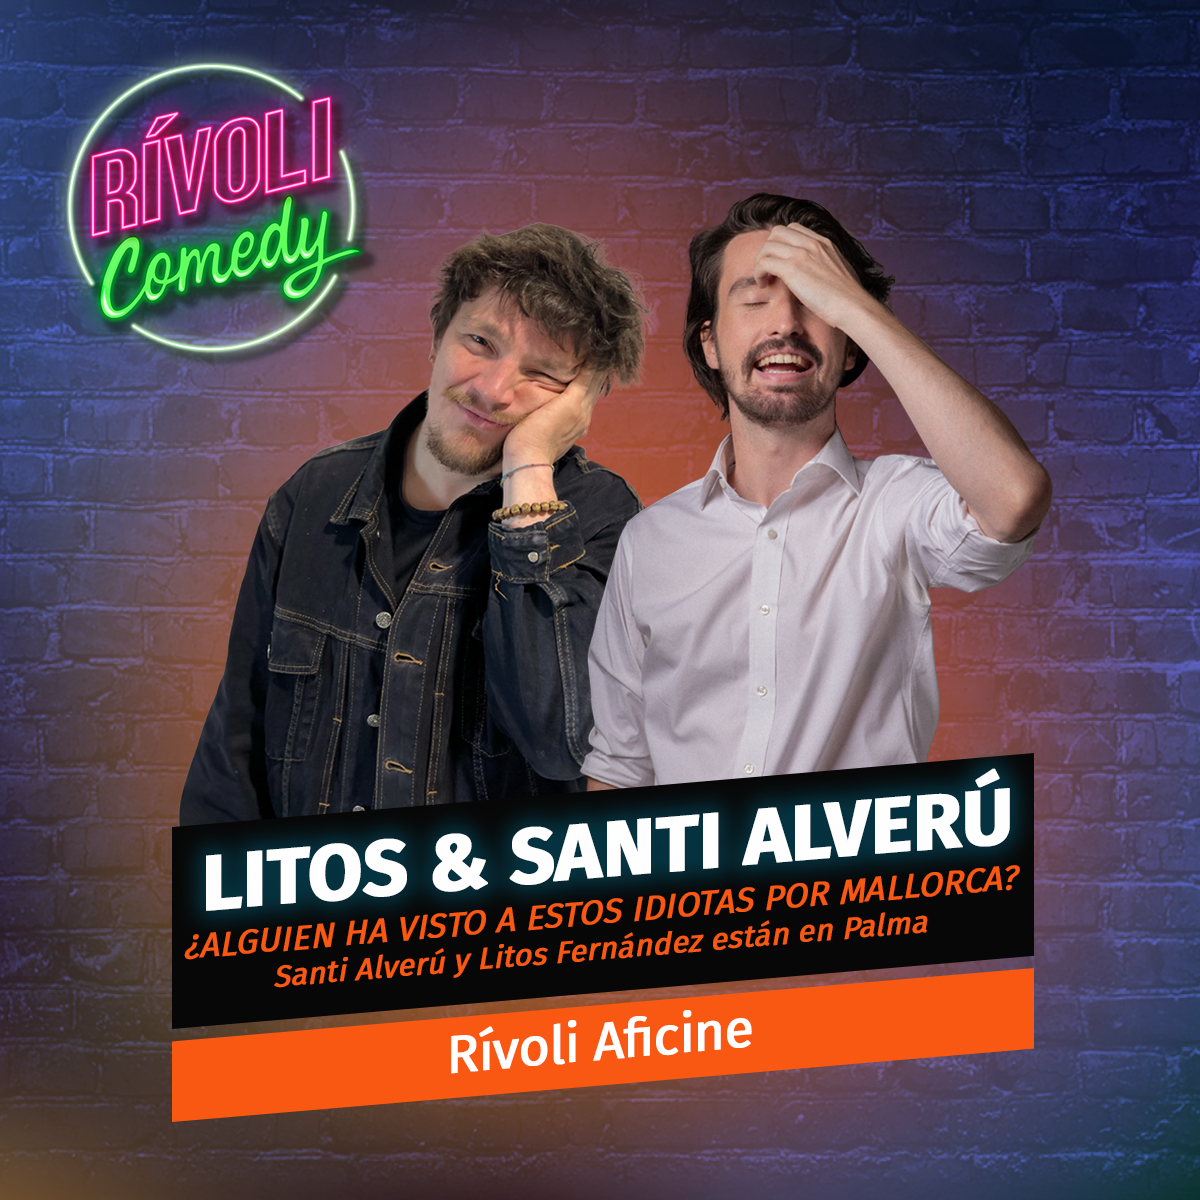 Litos & Santi Alverú | ¿Alguien ha visto a estos idiotas por Mallorca? · 21 de julio · Palma de Mallorca (Rívoli Comedy)